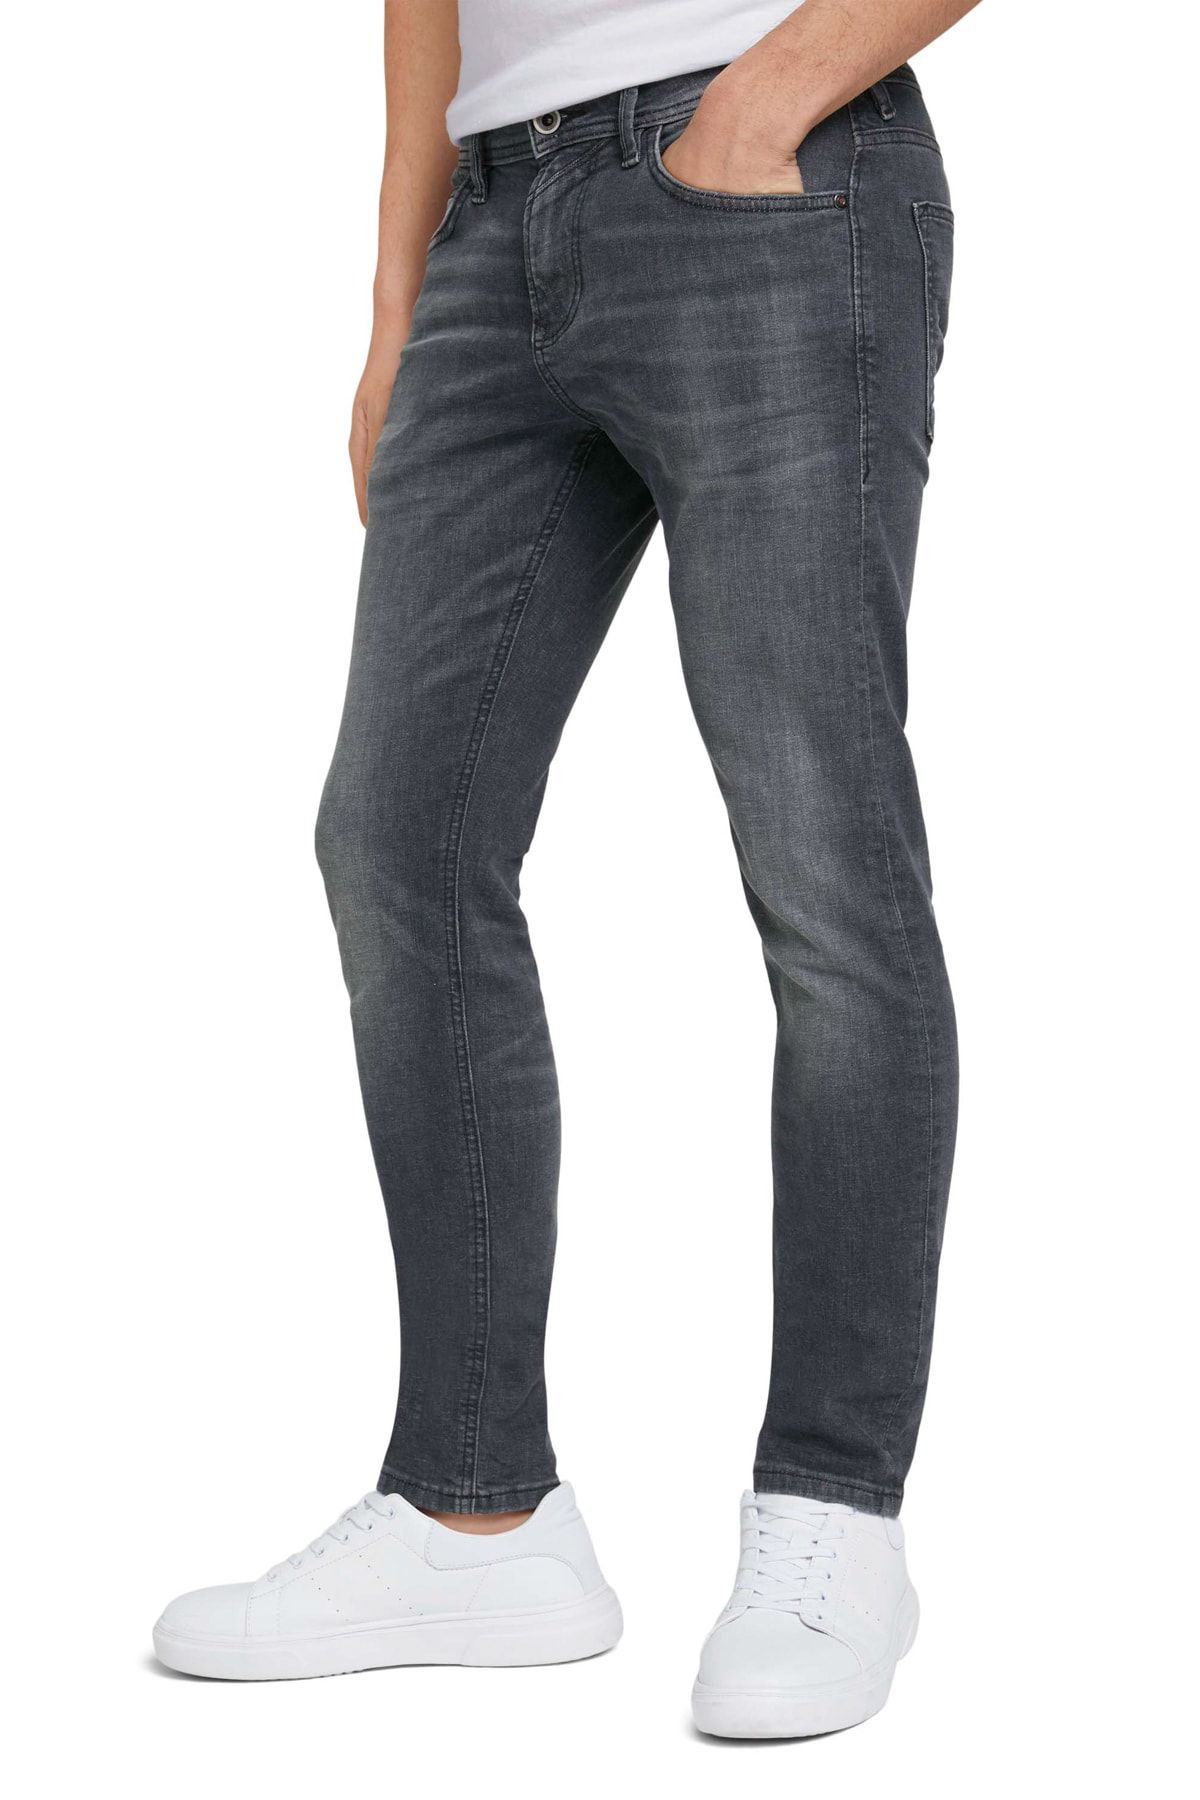 Tom Tailor Denim Jeans - Gray - Skinny - Trendyol